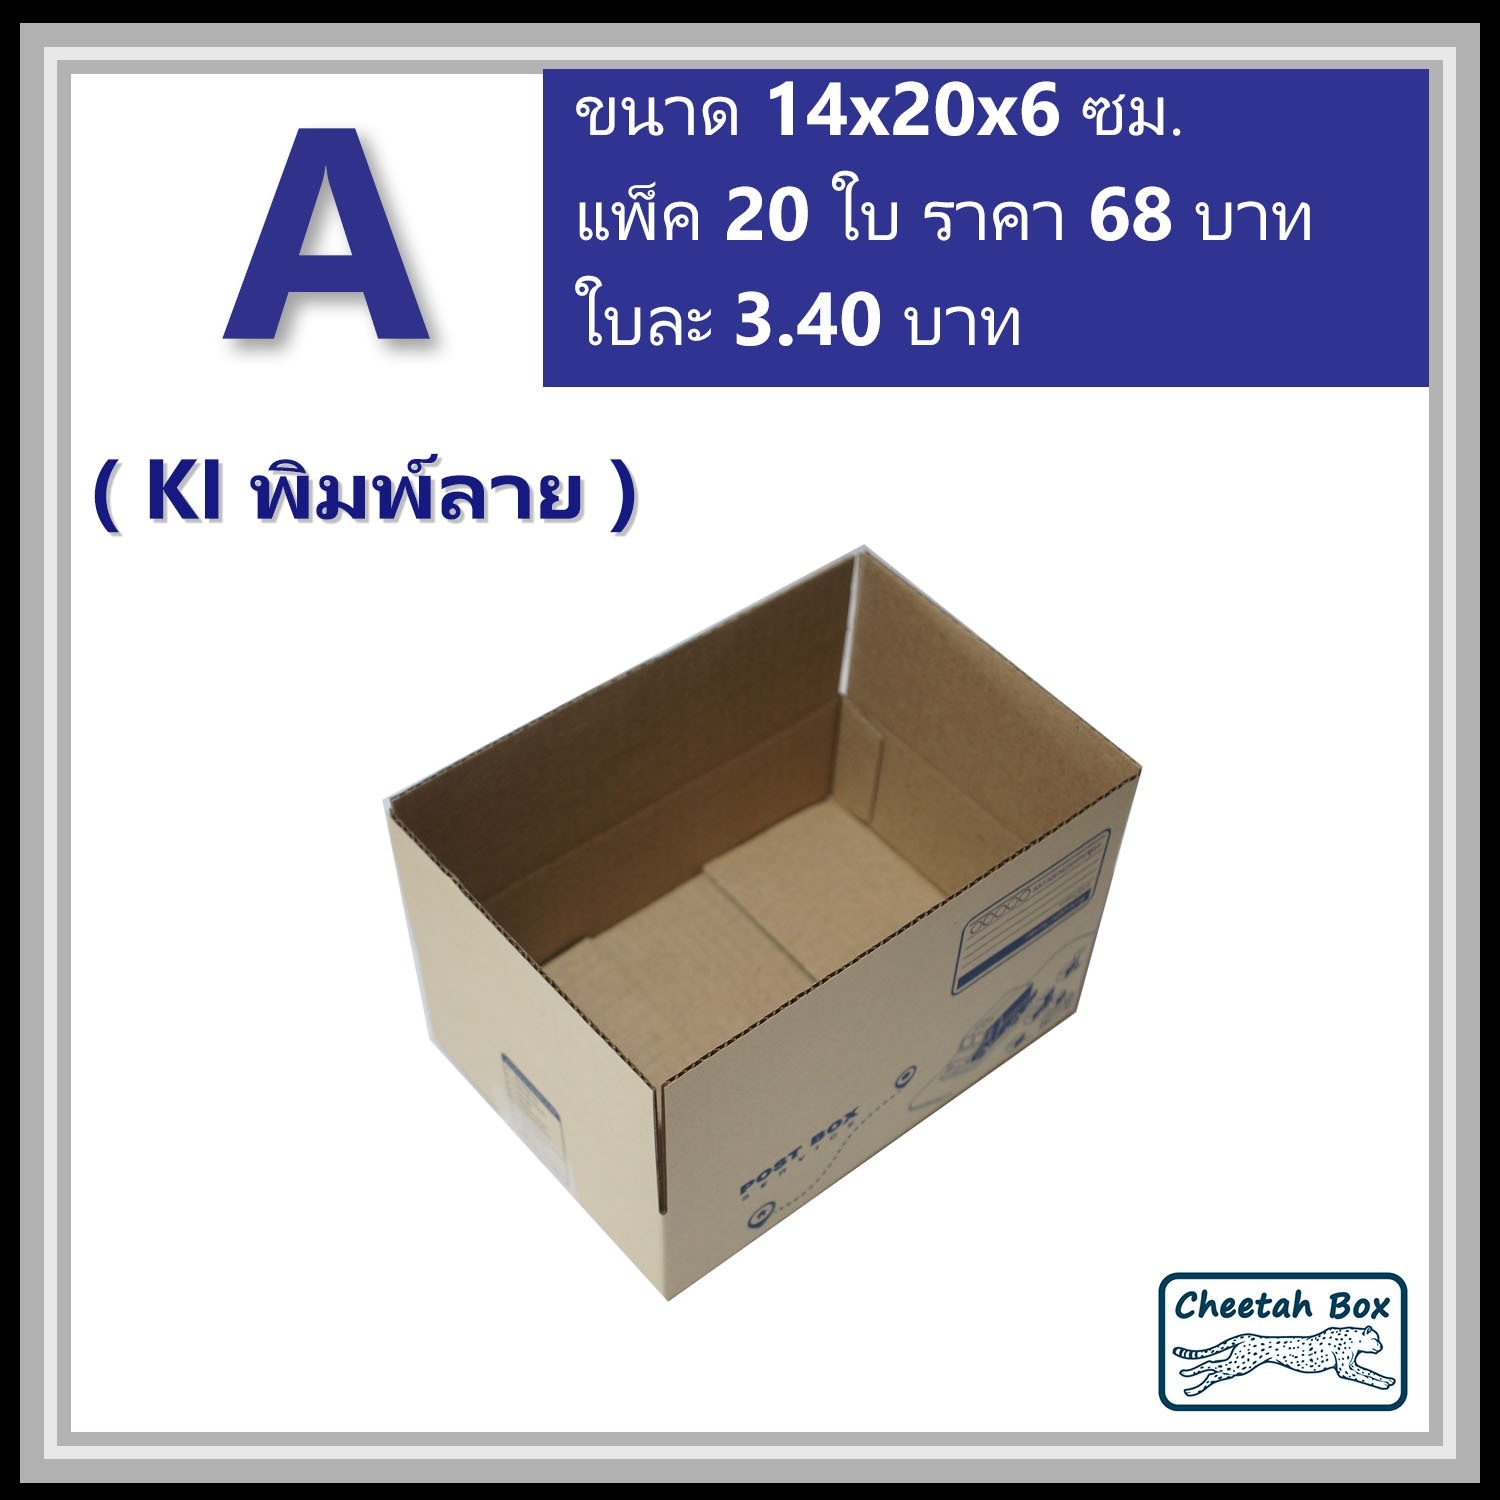 กล่องไปรษณีย์ A (Cheetah Box ขนาด 14*20*6 CM)